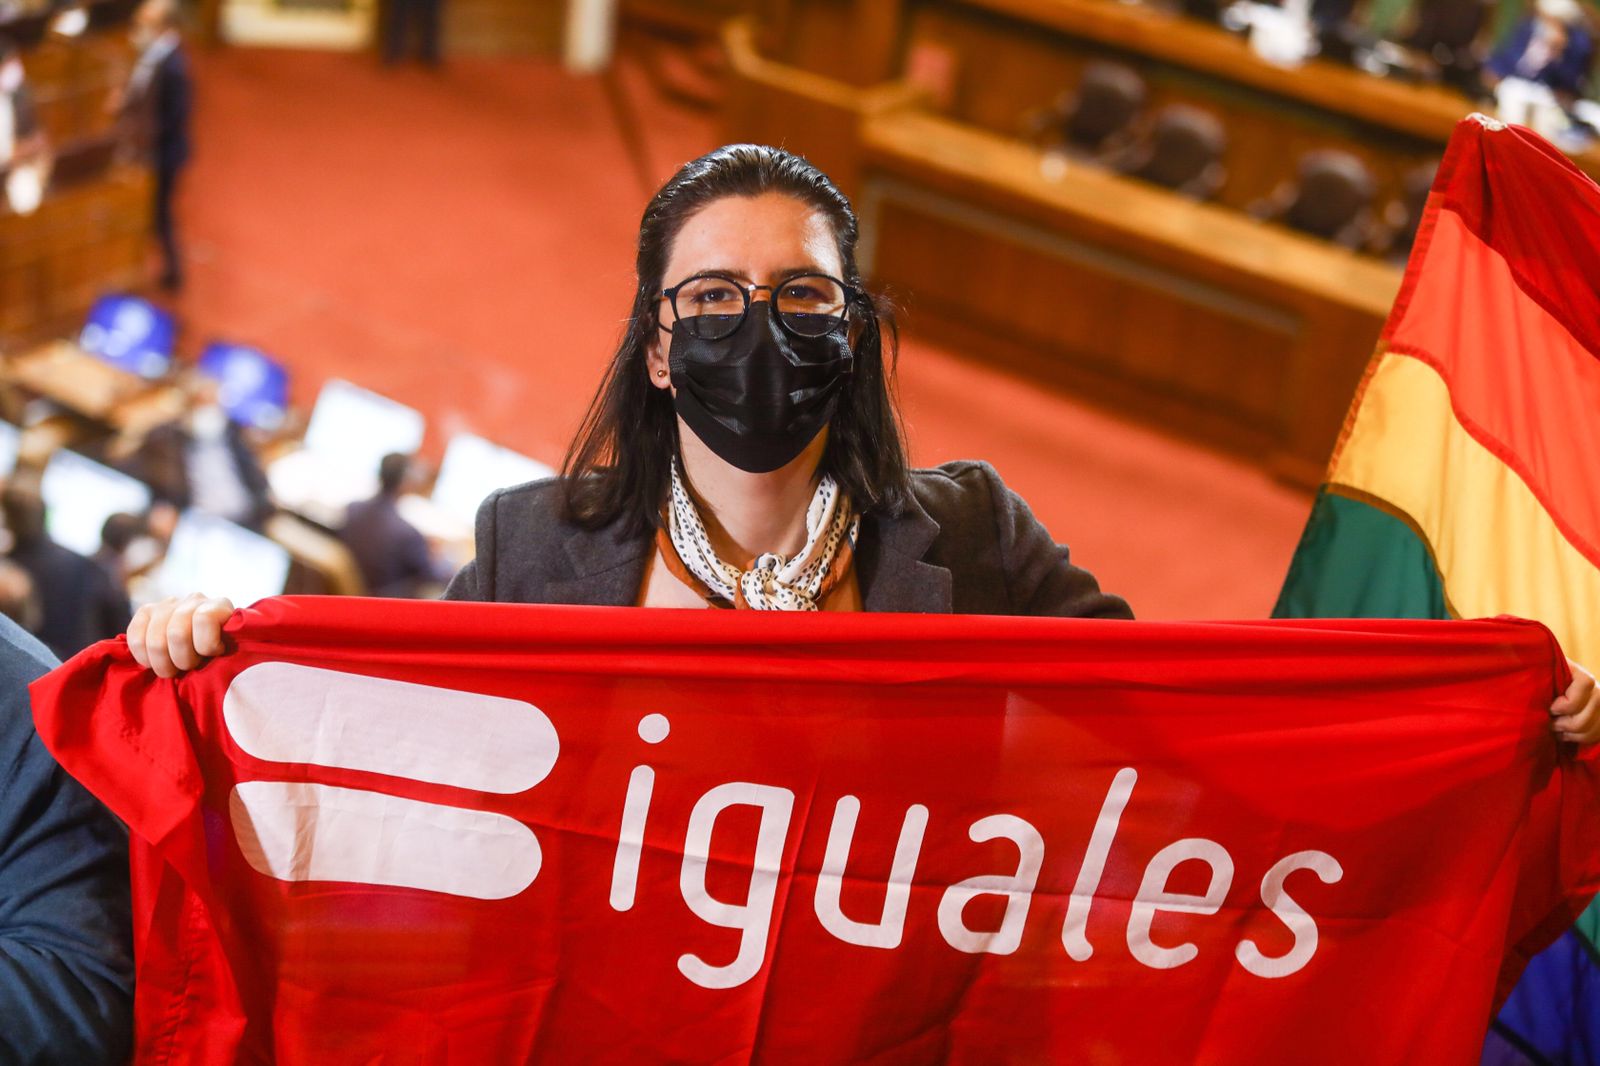  Isabel Amor, directora ejecutiva de Iguales: «El acceso igualitario al matrimonio civil y al reconocimiento de hijos es un anhelo para muchas familias en Chile»